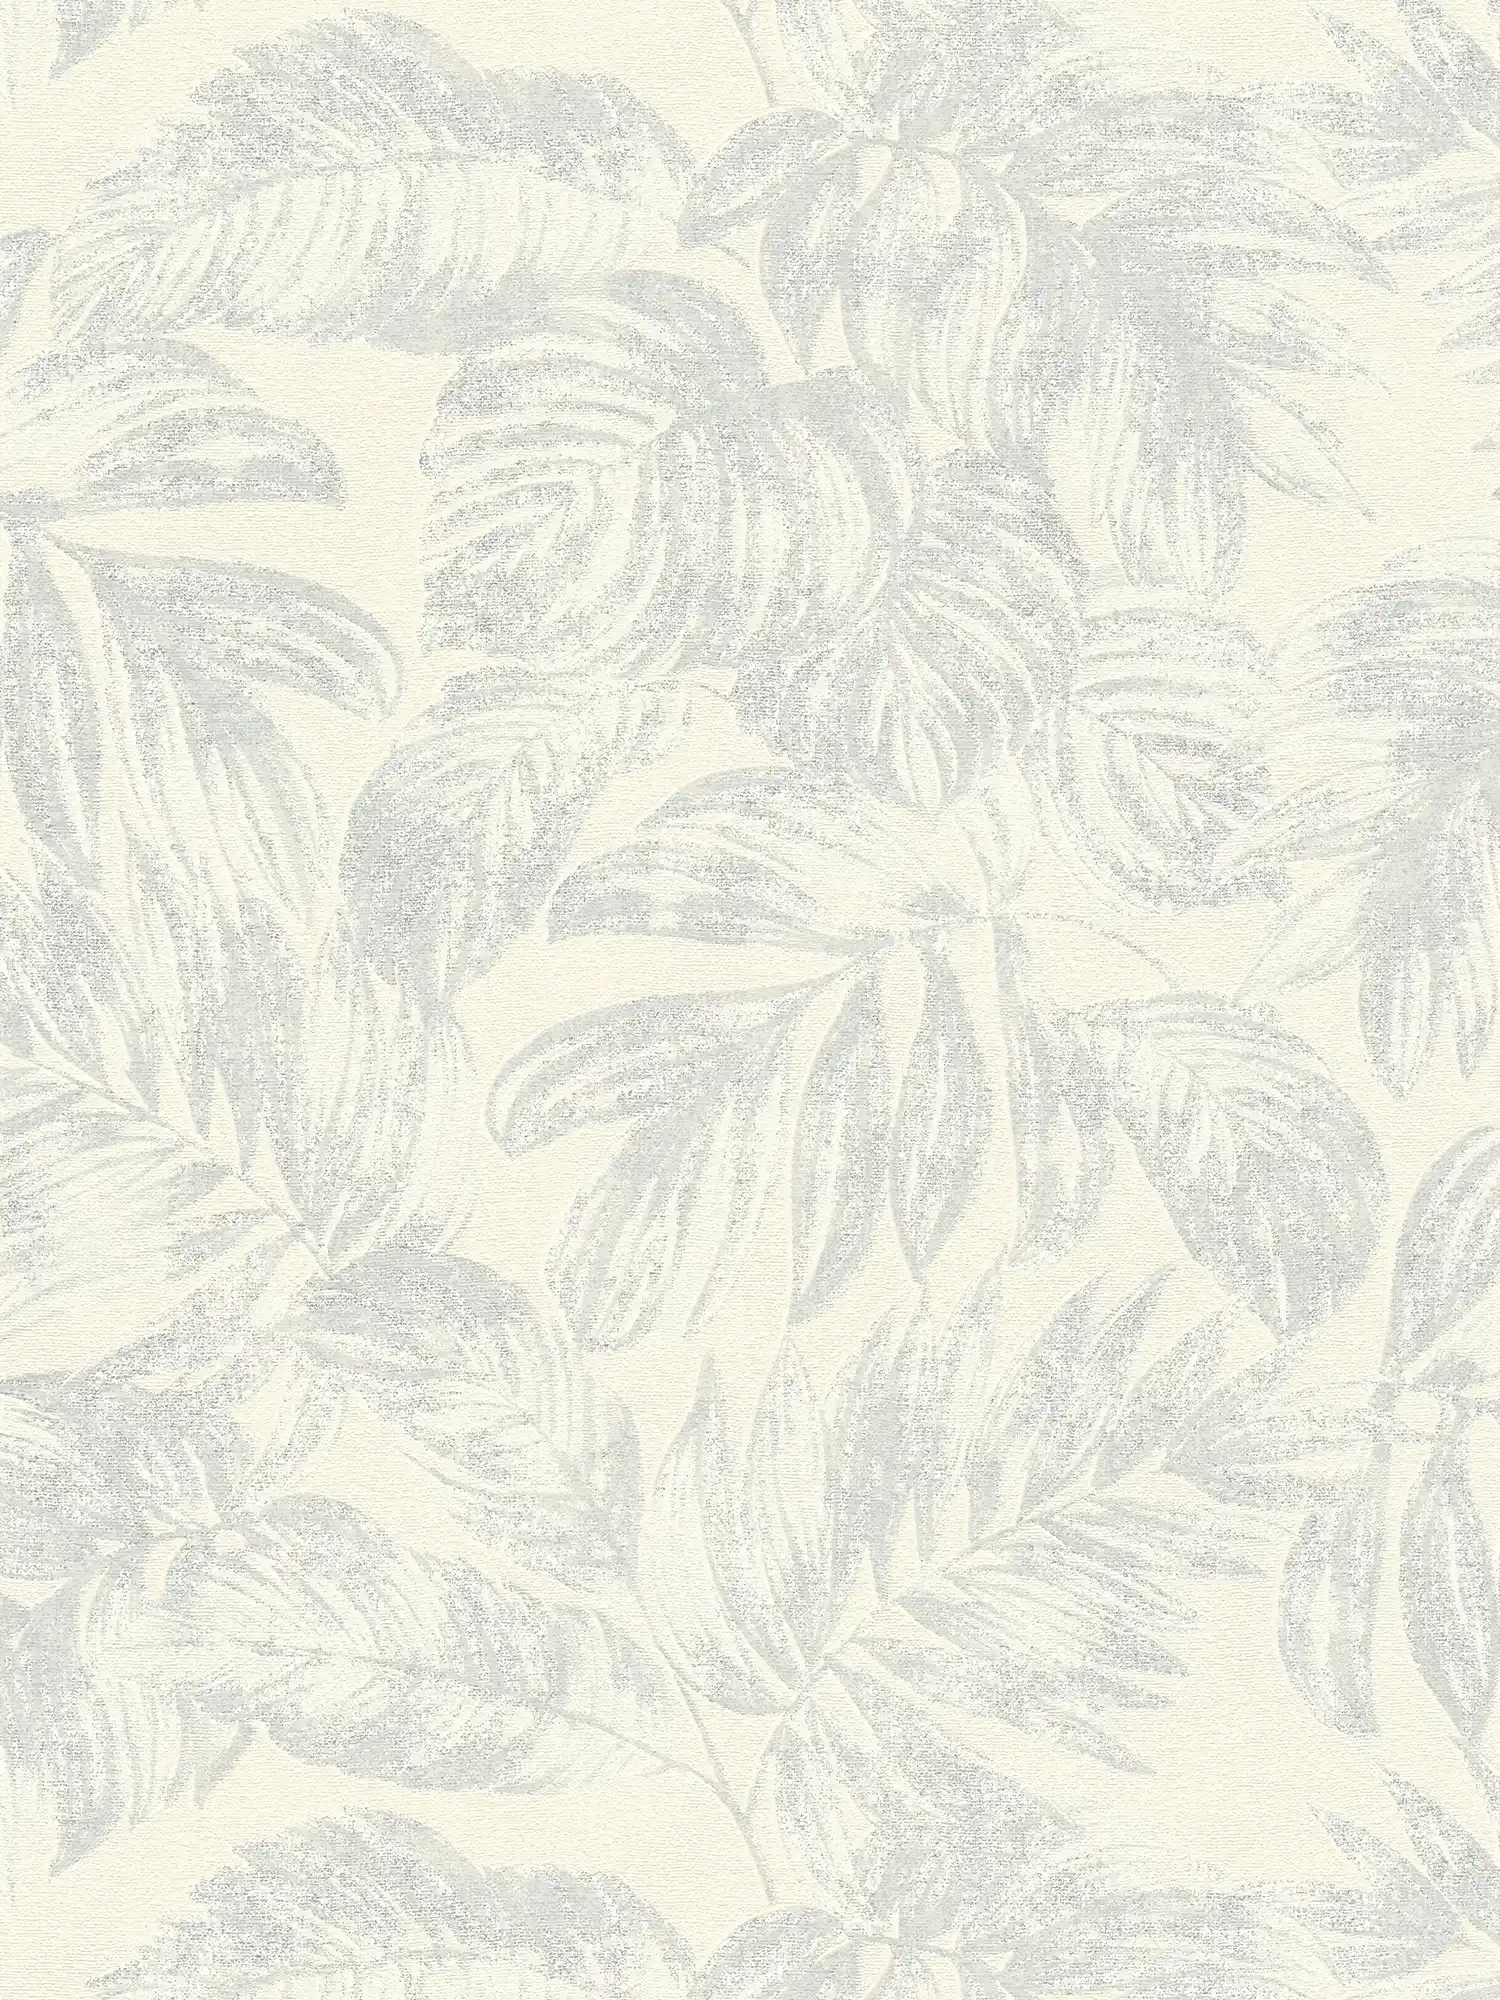 Vliestapete mit Dschungelblätter Muster in sanften Farben – Weiß, Silber
